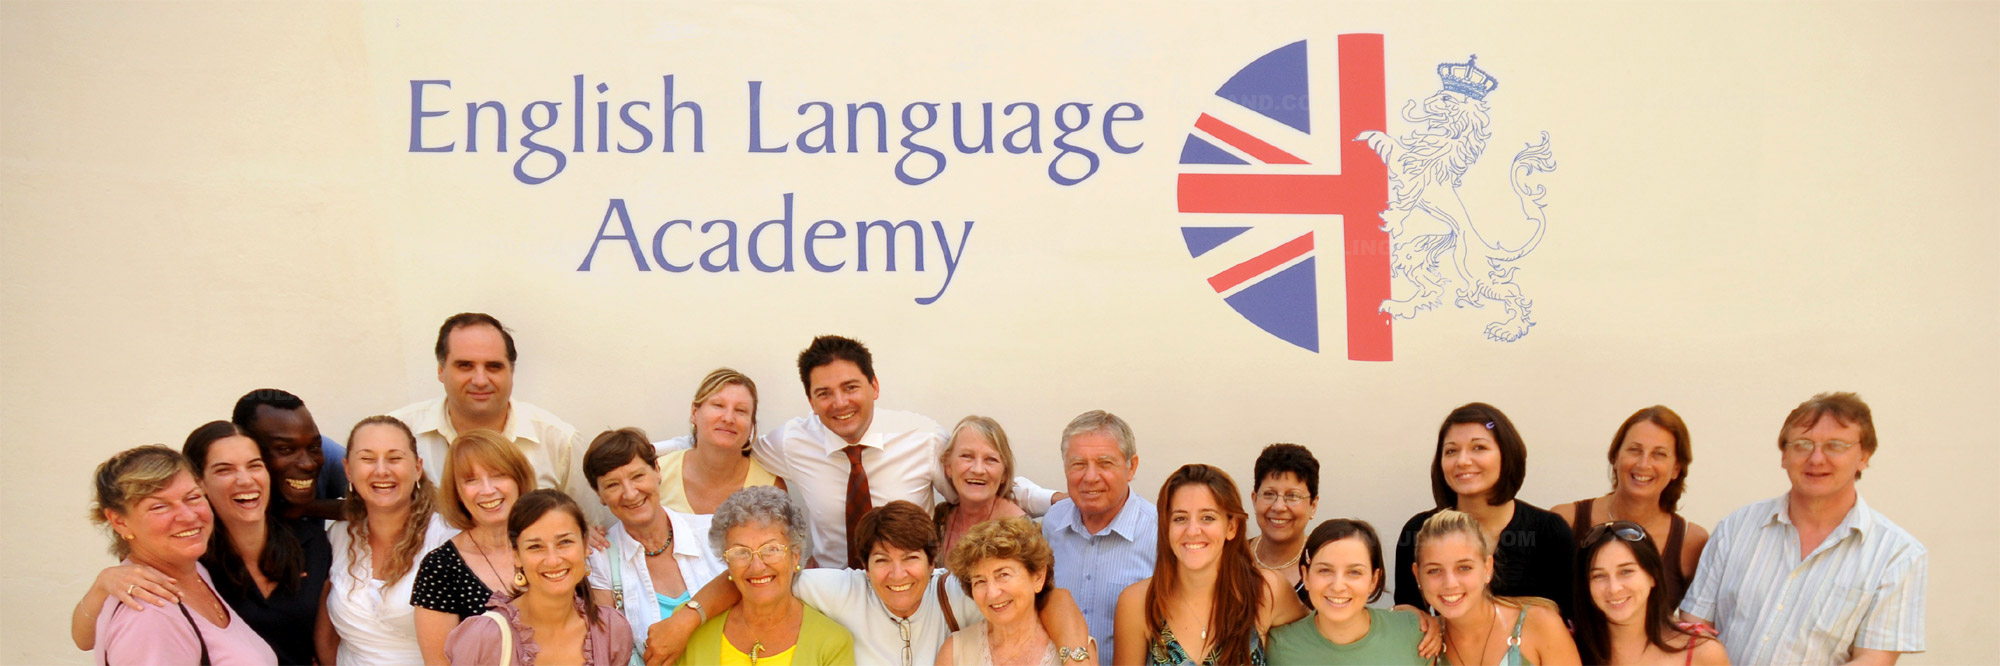 Cursos y precios de English Language Academy